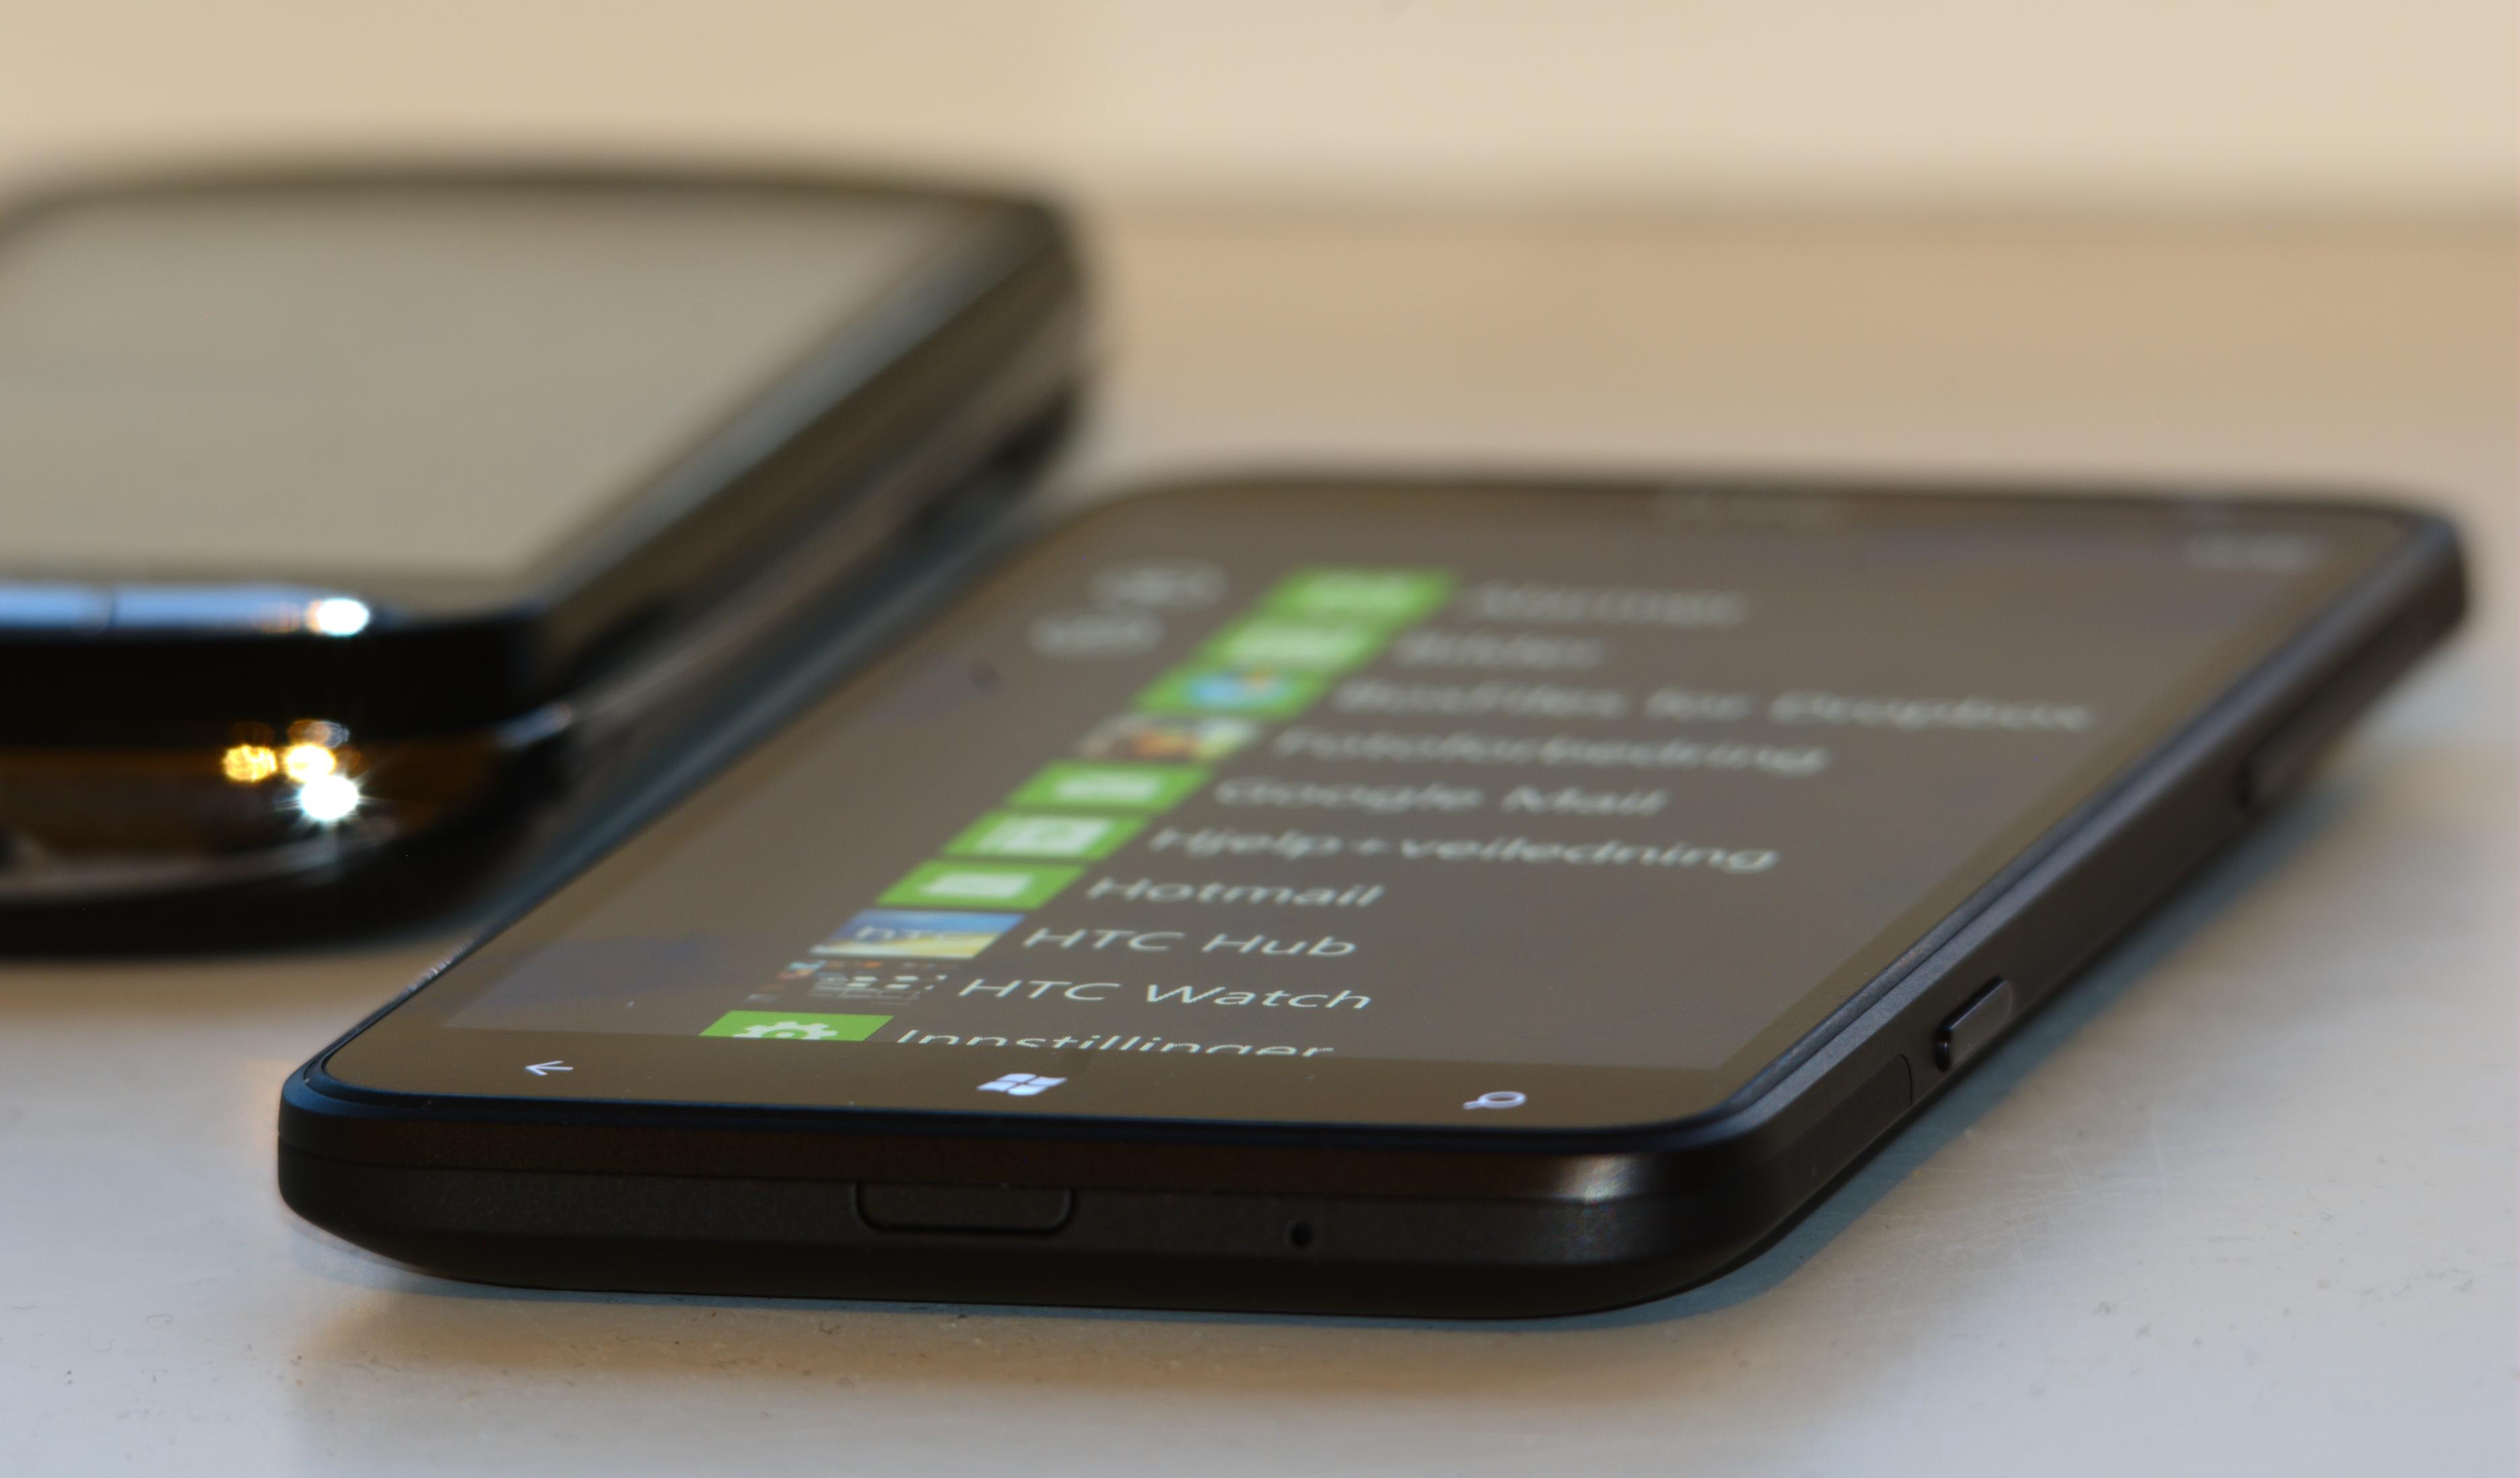 HTC Titan glir lettere ned i en lomme enn for eksempel Sony Ericsson Xperia Pro. (Foto: Einar Eriksen)